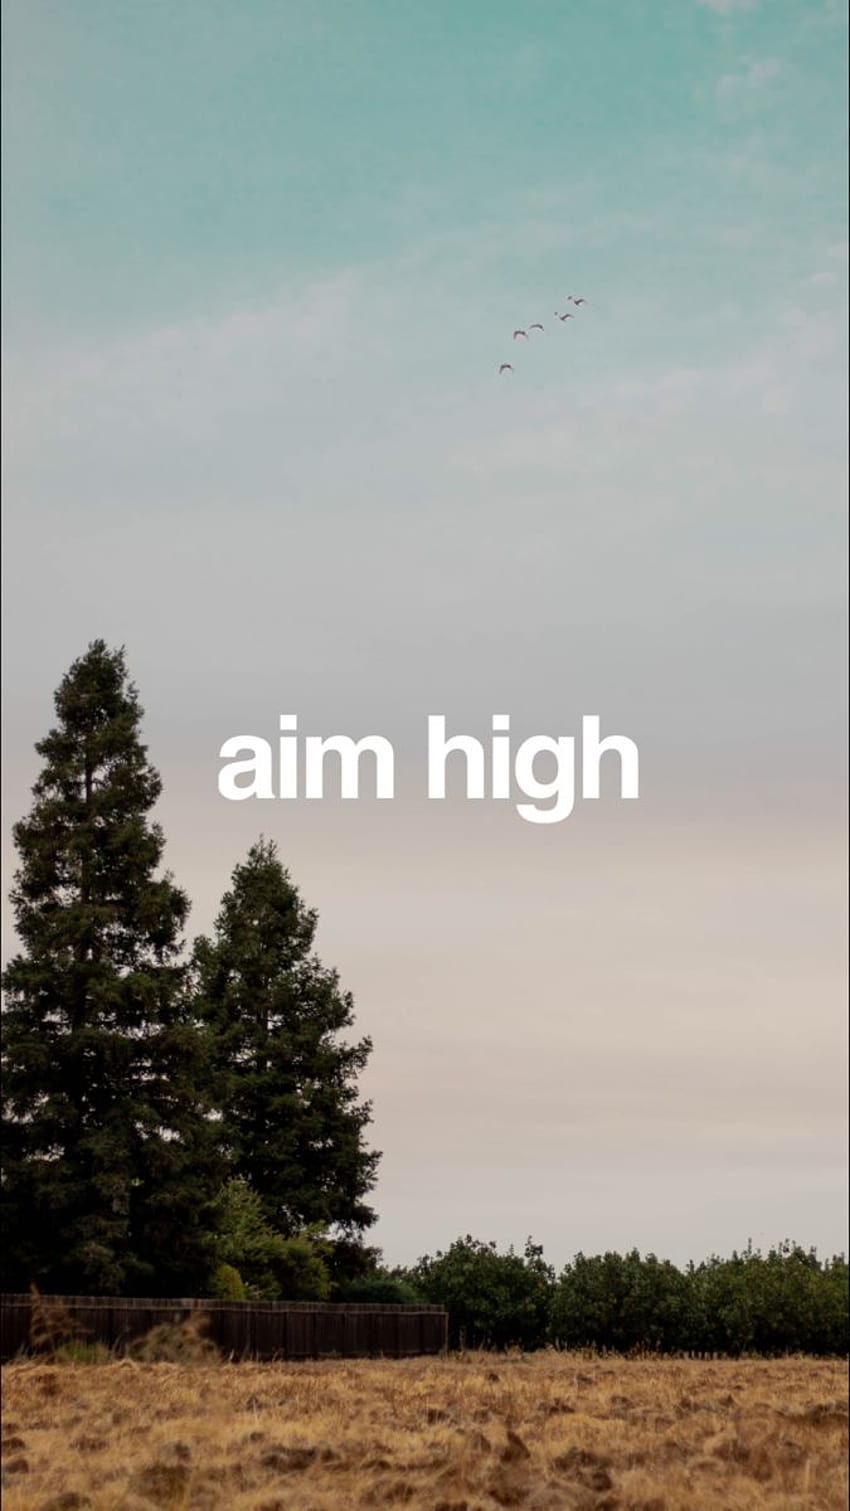 Aim high HD phone wallpaper